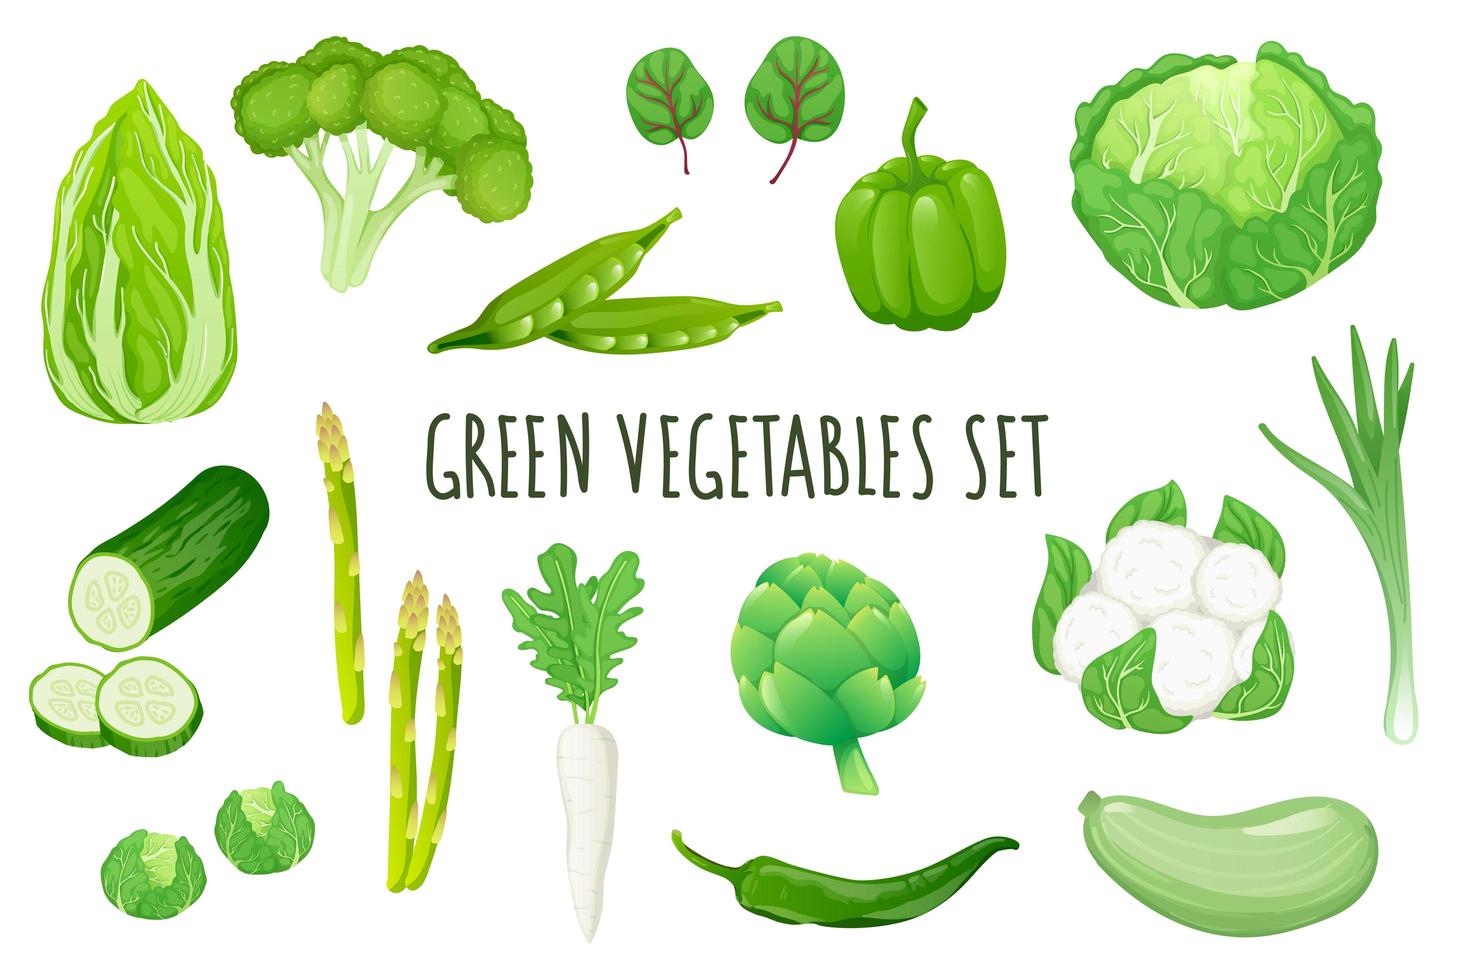 icono de verduras verdes en diseño 3d realista. paquete de repollo, brócoli, guisantes, pimiento, pepino, calabacín y otros. colección de menú vegetariano. ilustración vectorial aislado sobre fondo blanco. vector